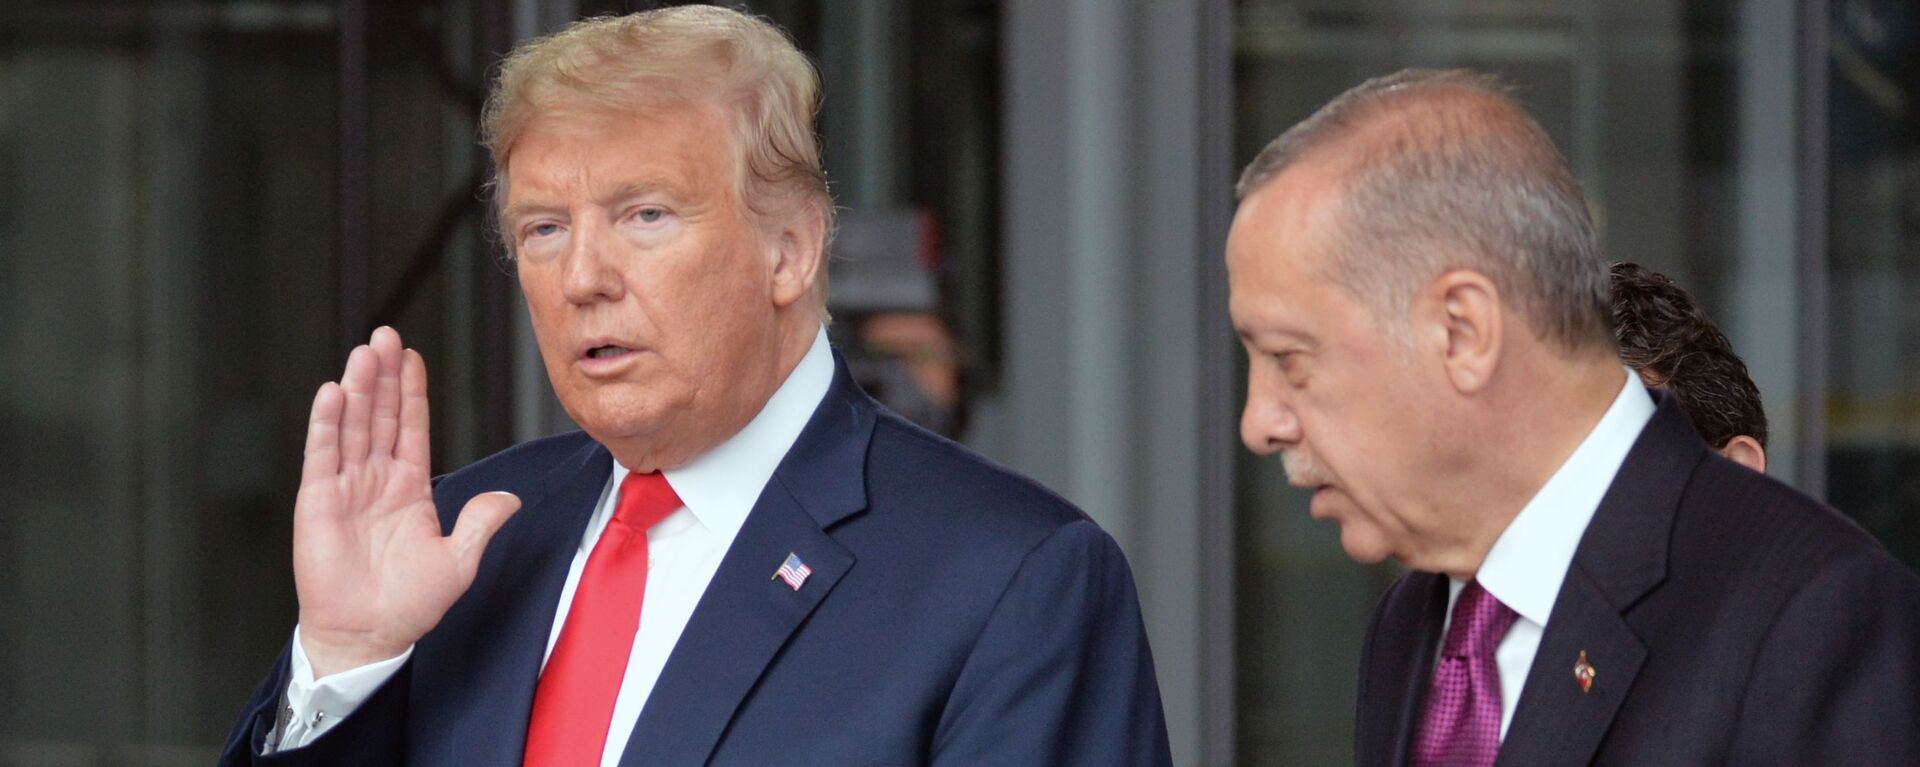 Дональд Трамп и Реджеп Тайип Эрдоган  - Sputnik Таджикистан, 1920, 28.12.2019